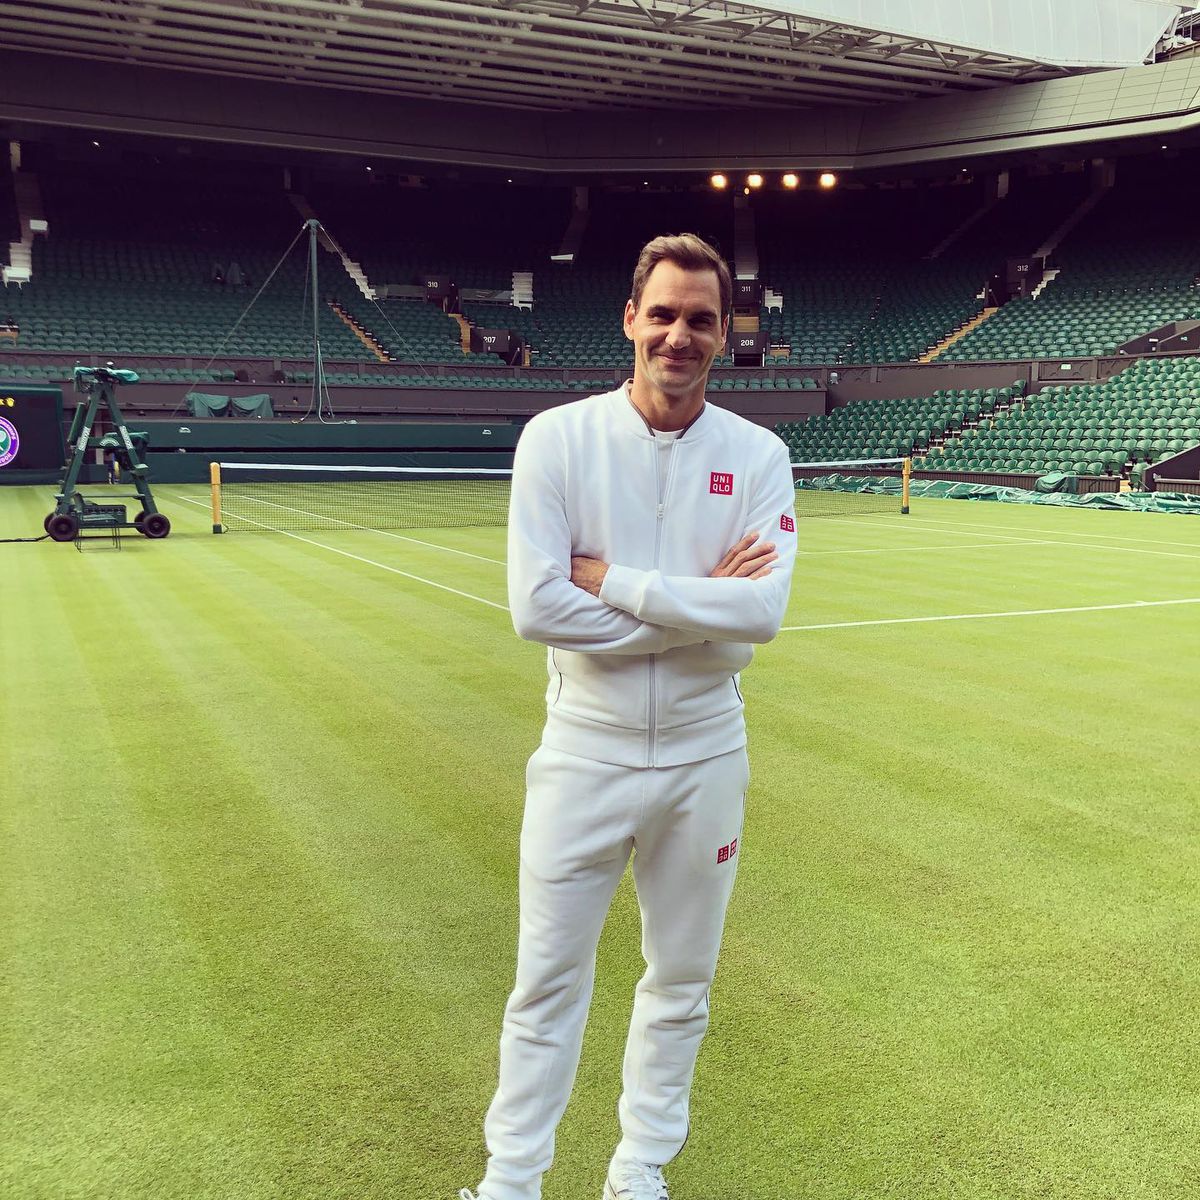 Legendarul Roger Federer și-a anunțat retragerea din tenis: „Va fi ultimul meu turneu. Mesajul corpului meu a fost clar”